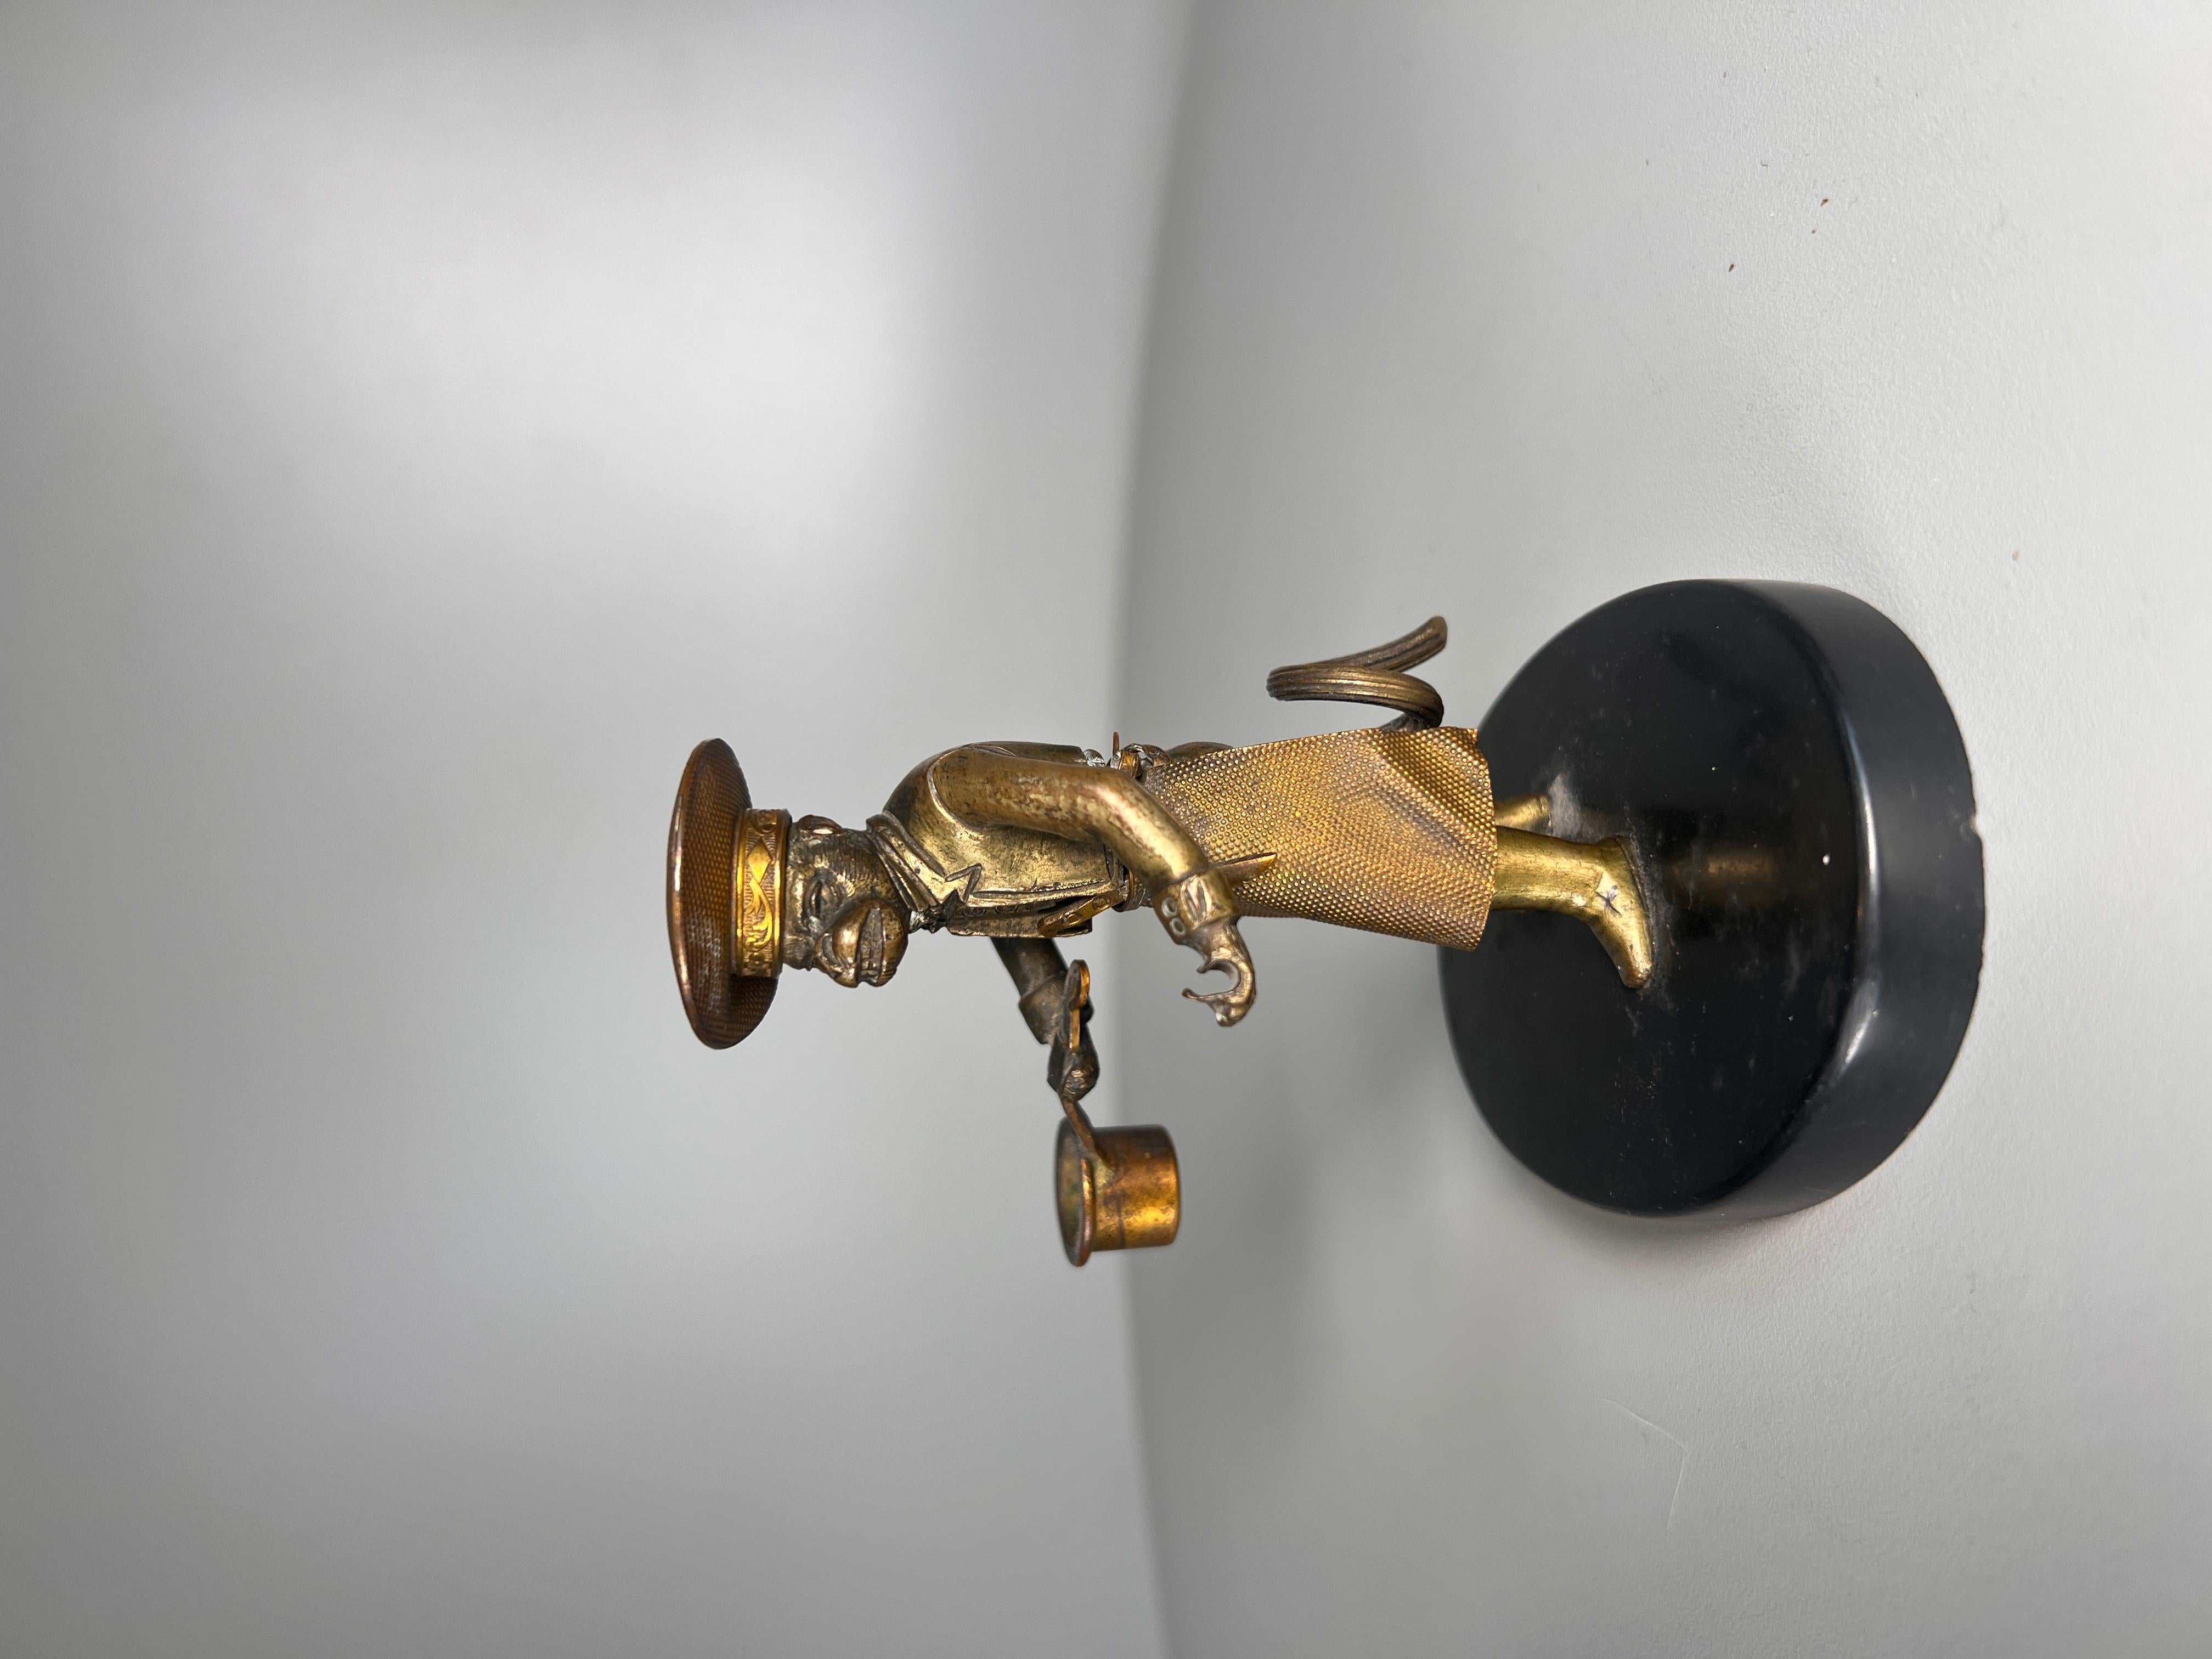 Ce chef singe en bronze doré, au modelage fantastique, se dresse fièrement sur un socle en pierre noire polie.